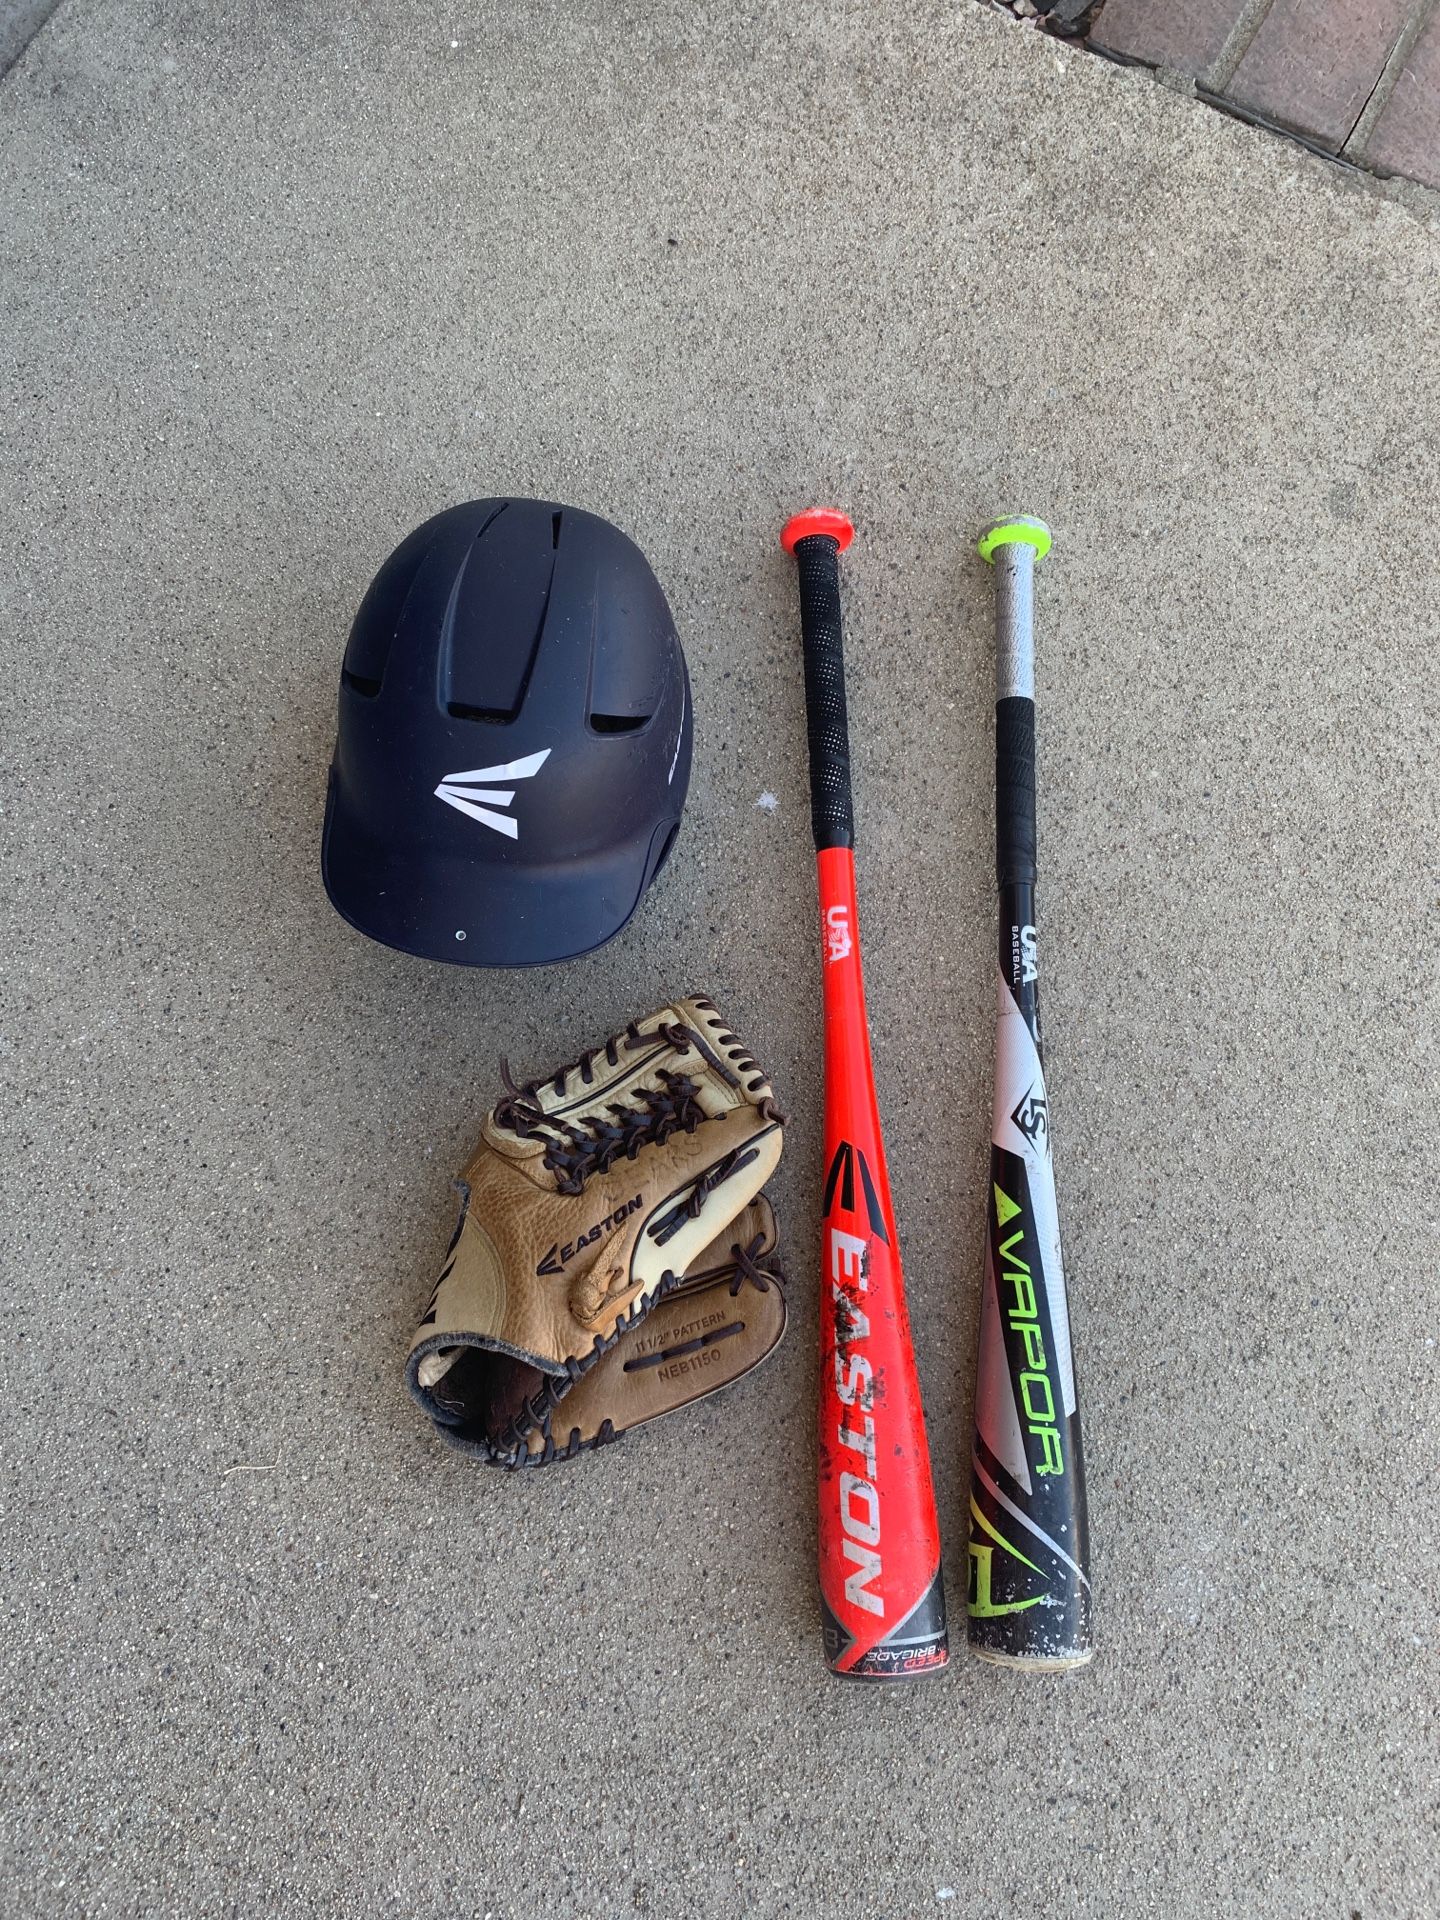 Baseball glove and bats